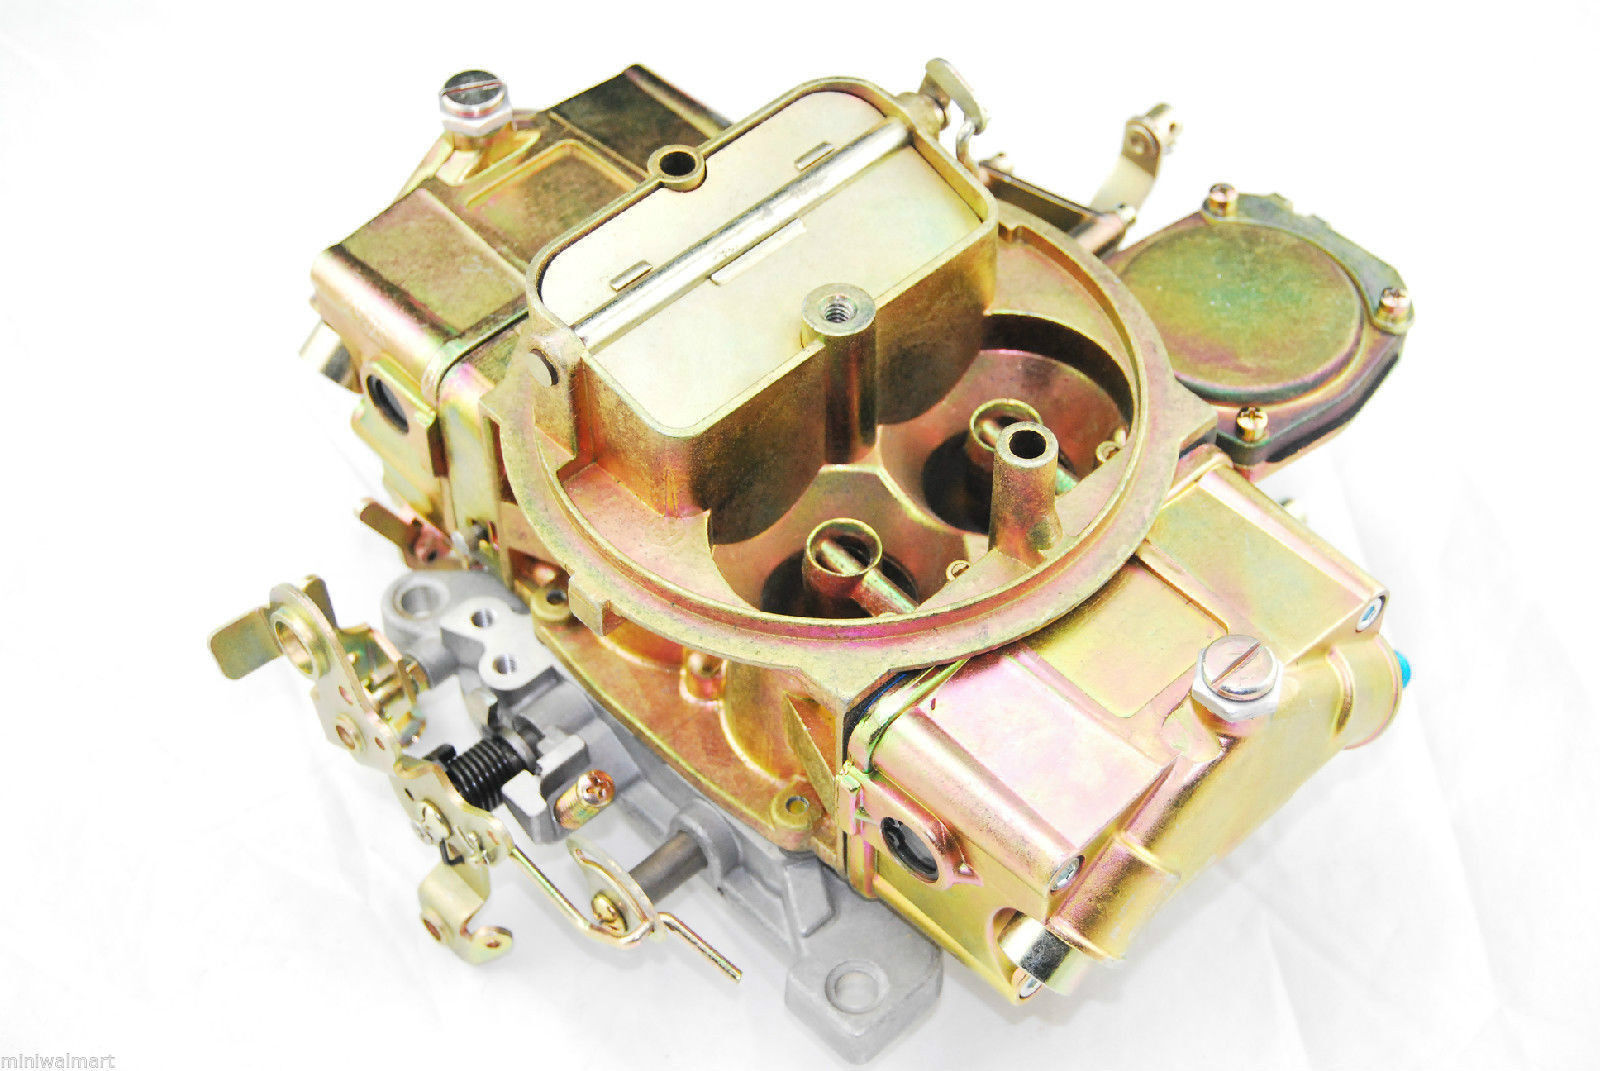 NEW GOOD 390CFM Carburetor Manual Choke Vacuum Secondaries Fast Ship DHL